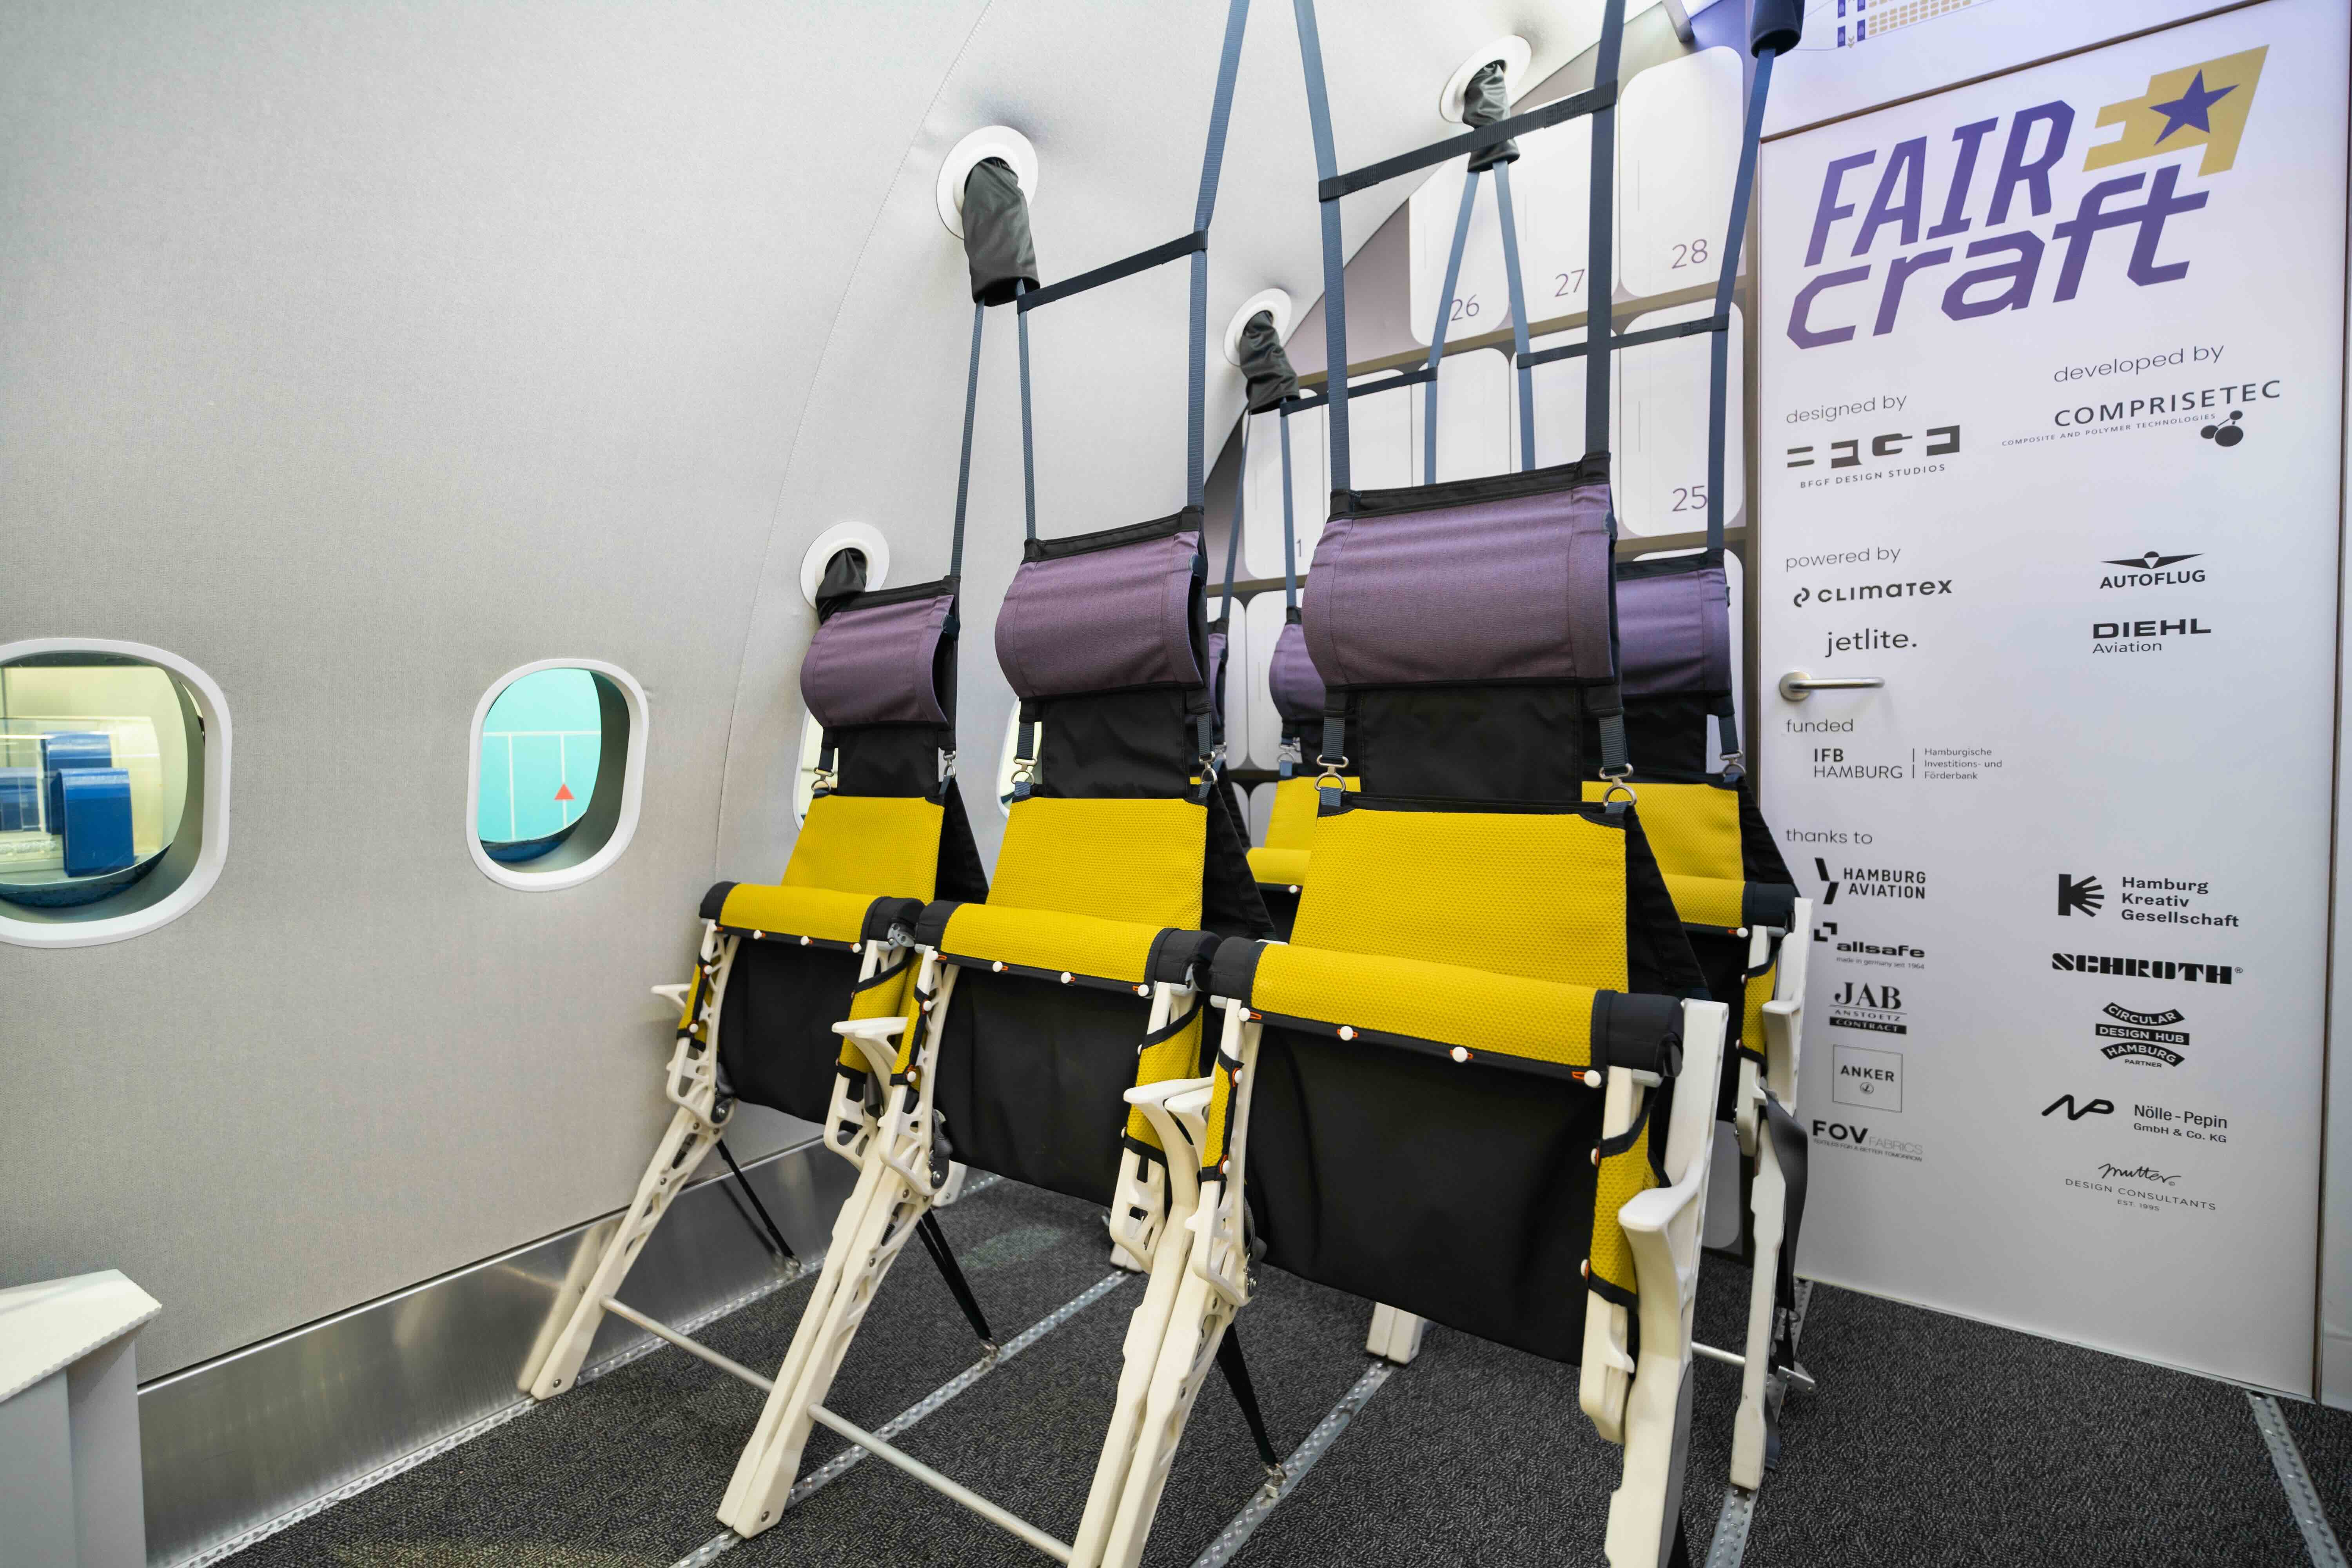 FAIRCRAFT-Sitze sparen durch leichte Textilien und den Verzicht auf schwere Metallgestelle die Hälfte an Gewicht ein.